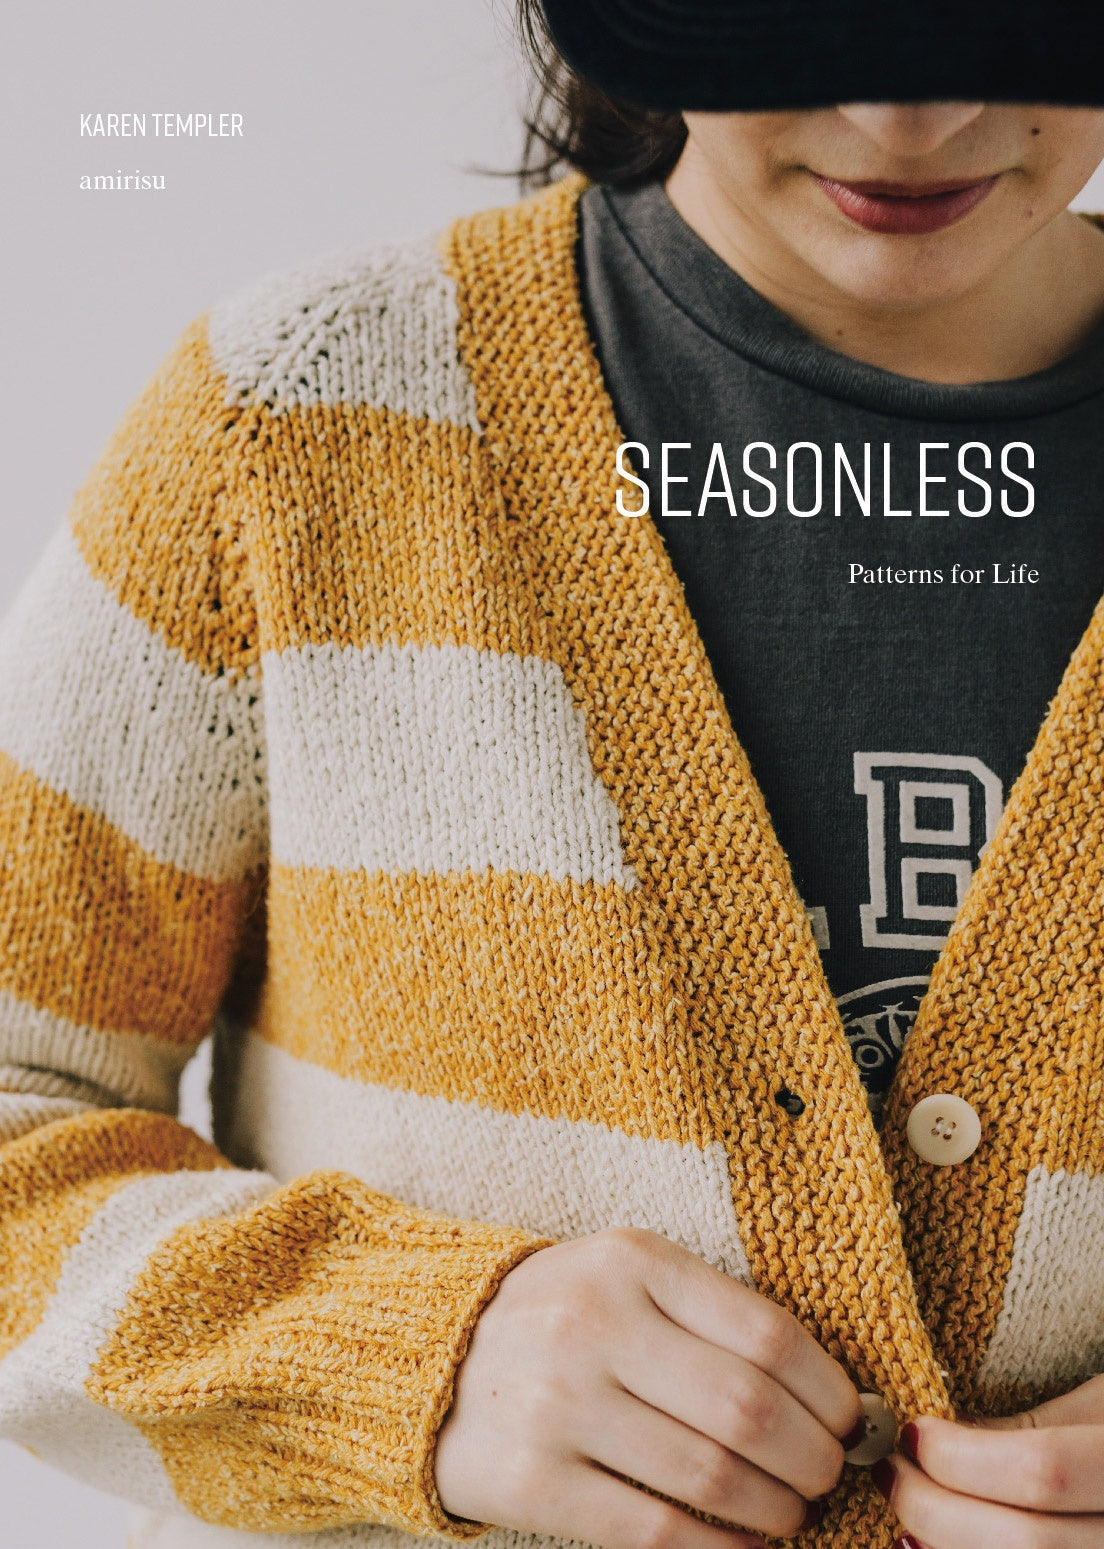 Seasonless: Patterns for Life (Karen Templer)